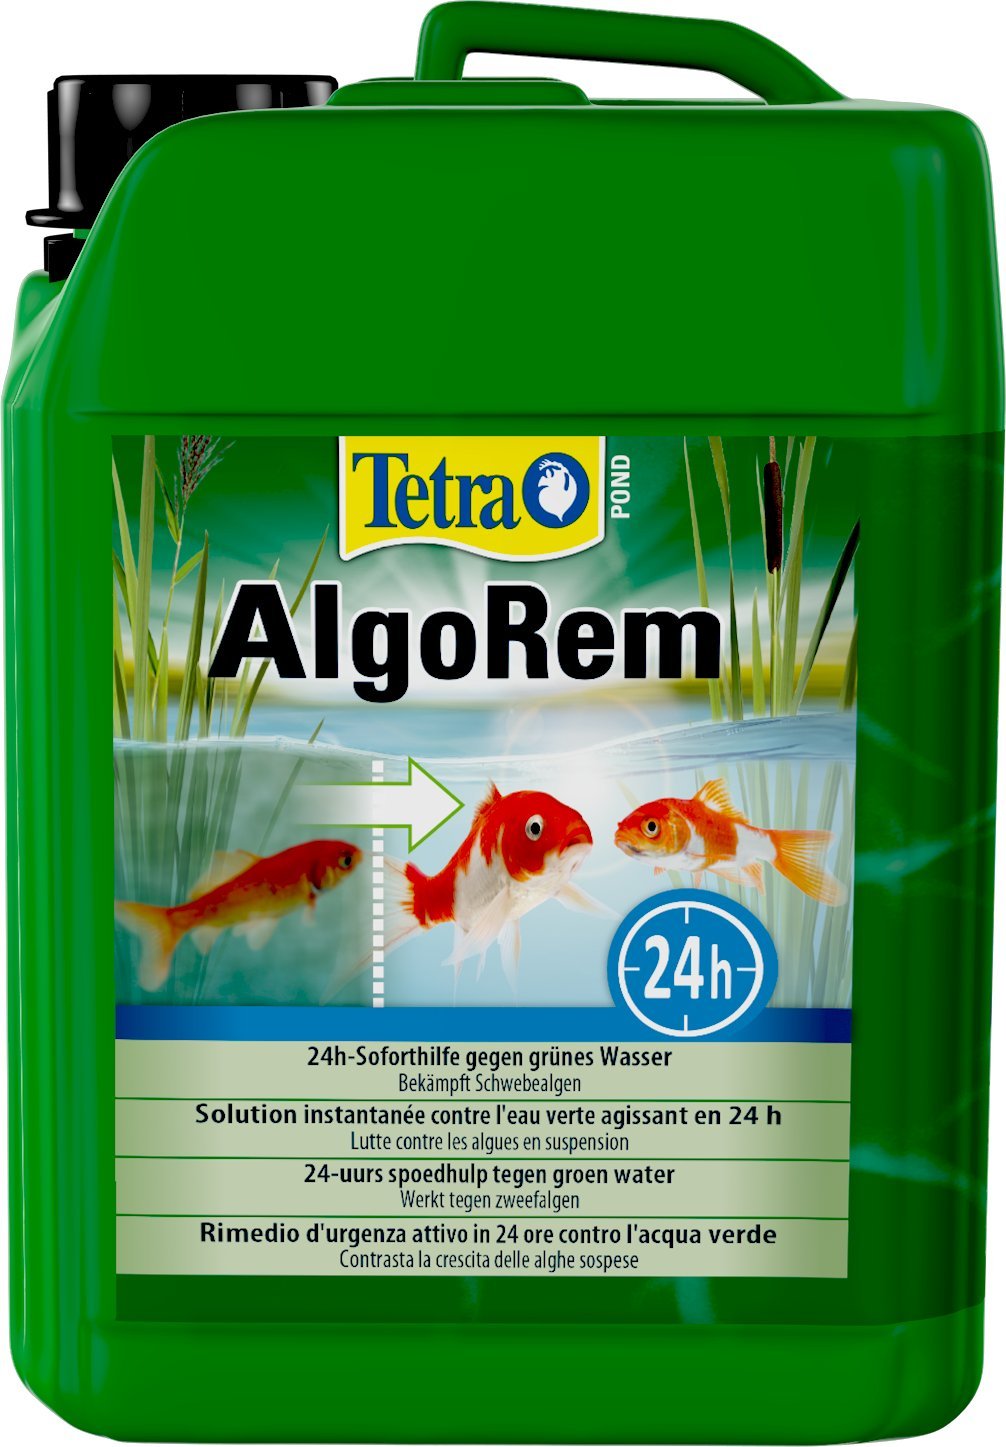 tetra-pond-algorem-3l-detruit-les-algues-qui-rendent-l-eau-de-votre-bassin-verte-traite-jusqu-a-60000l